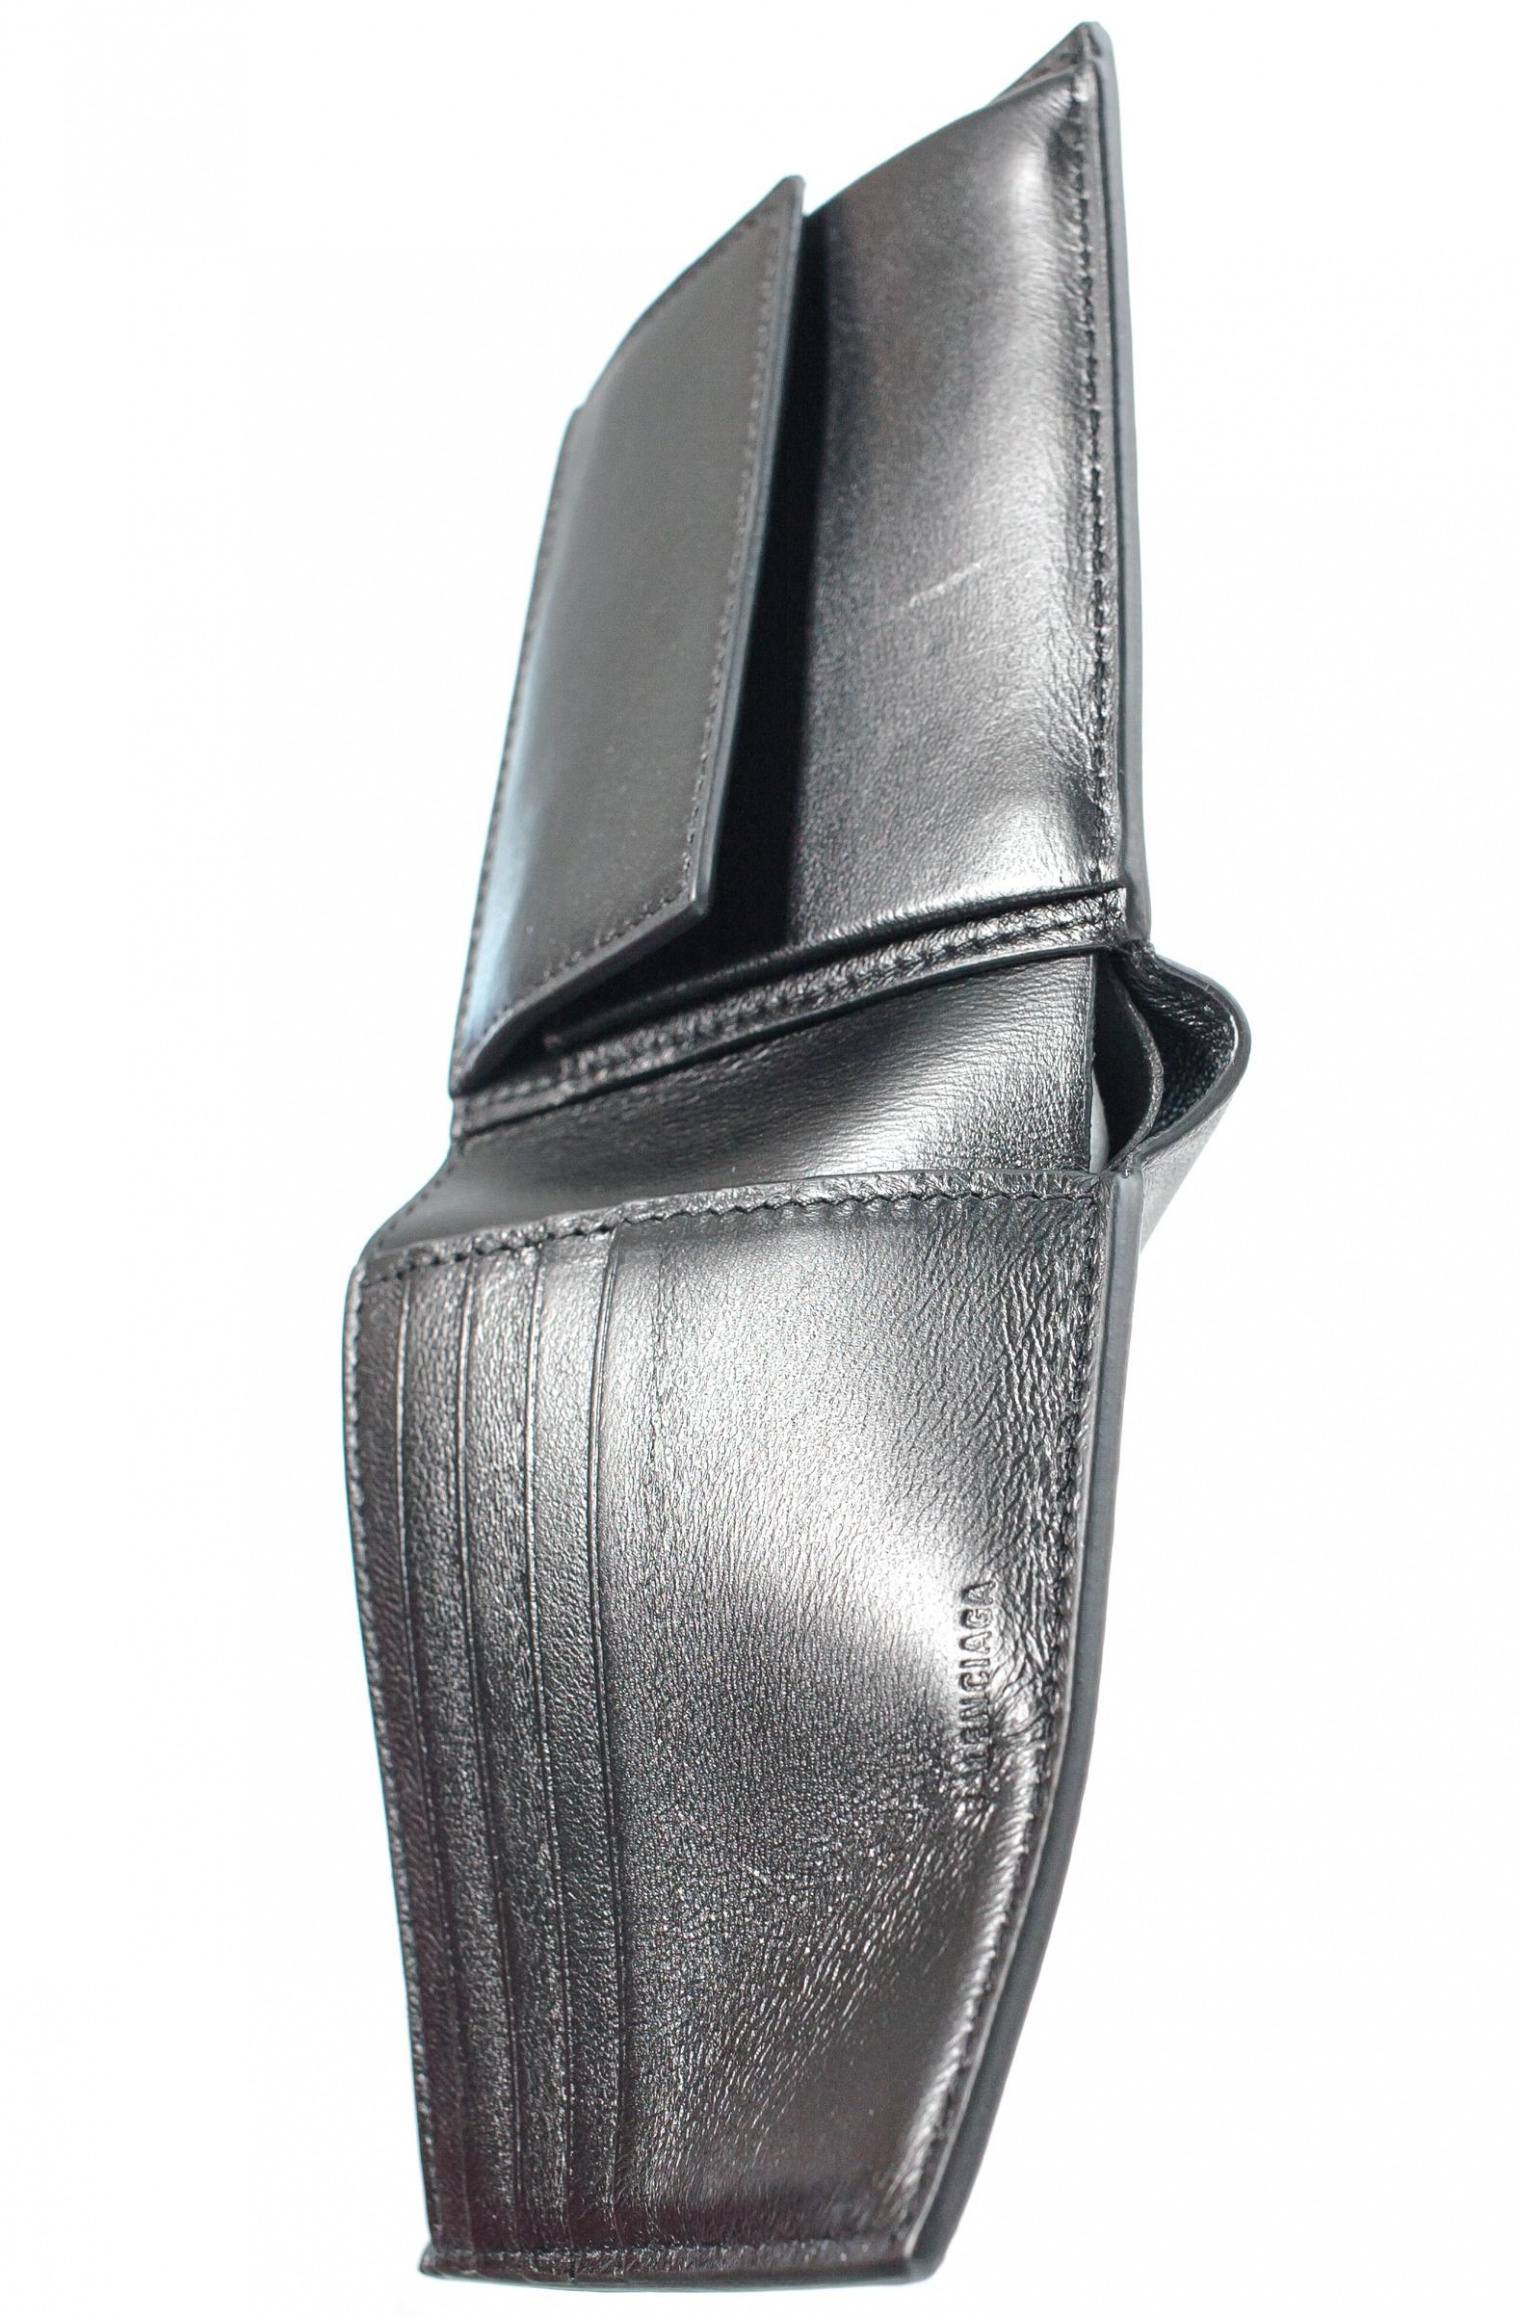 Balenciaga Black Leather Logo Wallet